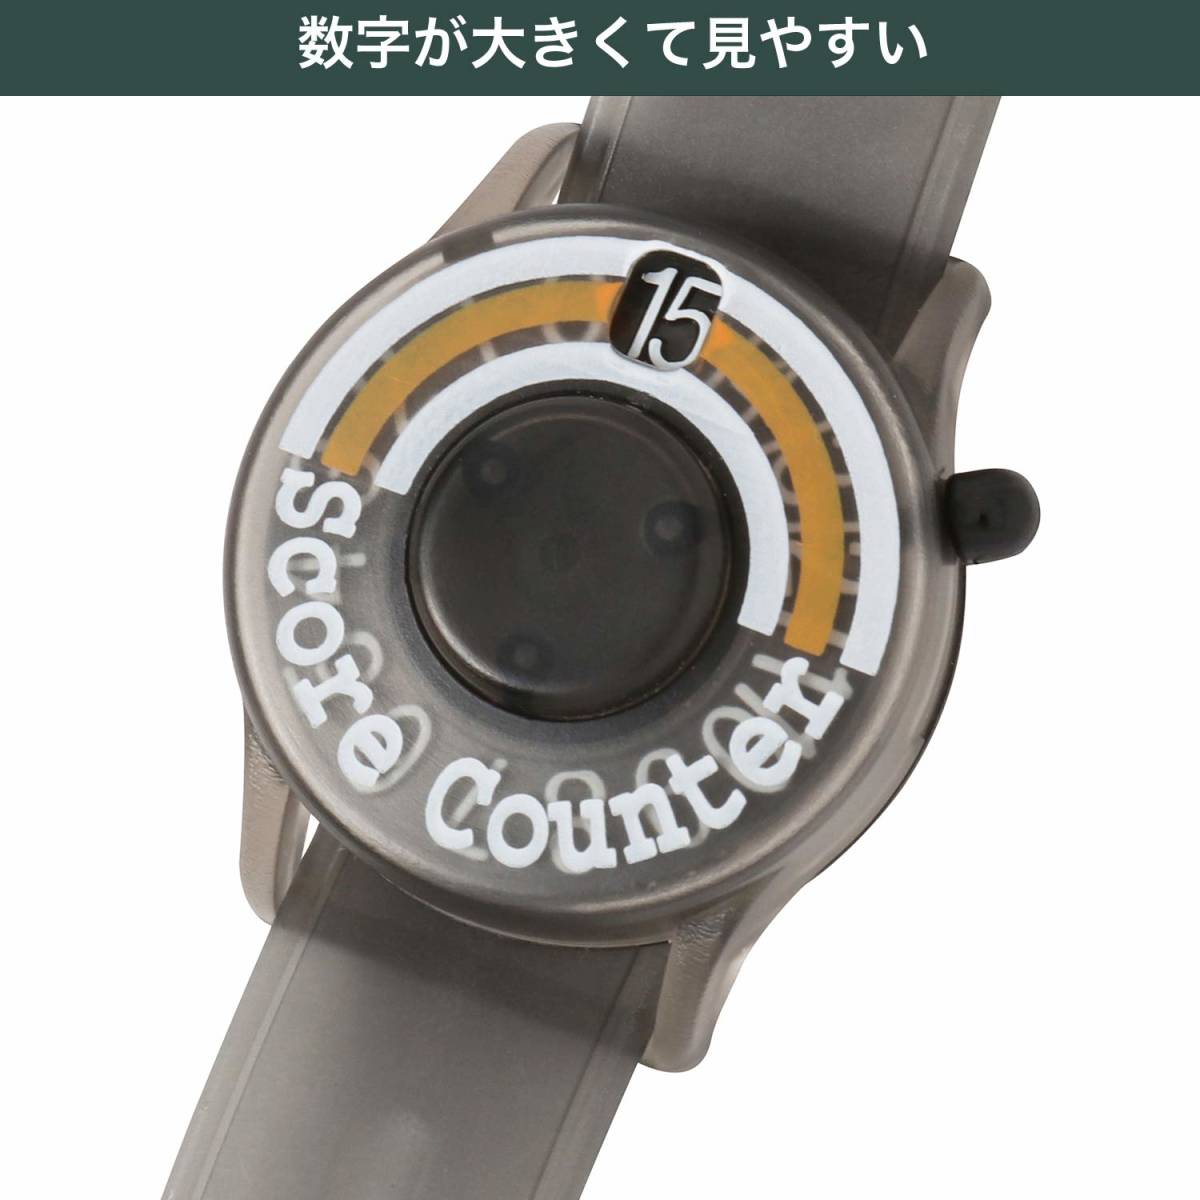 【人気商品】Tabata(タバタ) スコアカウンター ゴルフ 腕時計 ゴルフラウンド用品 ウォッチスコアカウンターIII GV09_画像4